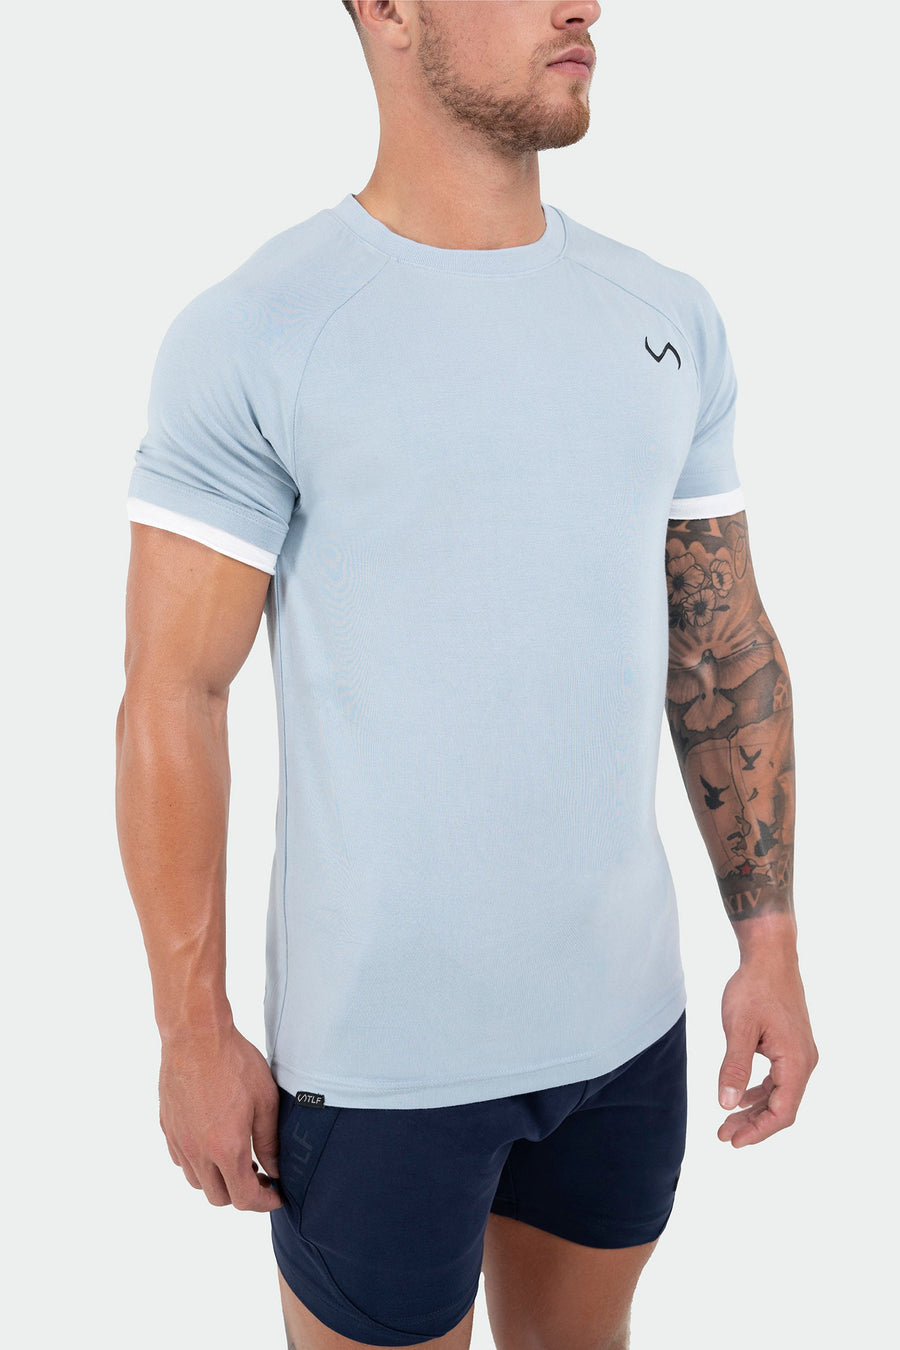 TLF Air-Flex Classic Tee - Mens Modal T Shirt - Blue - 2